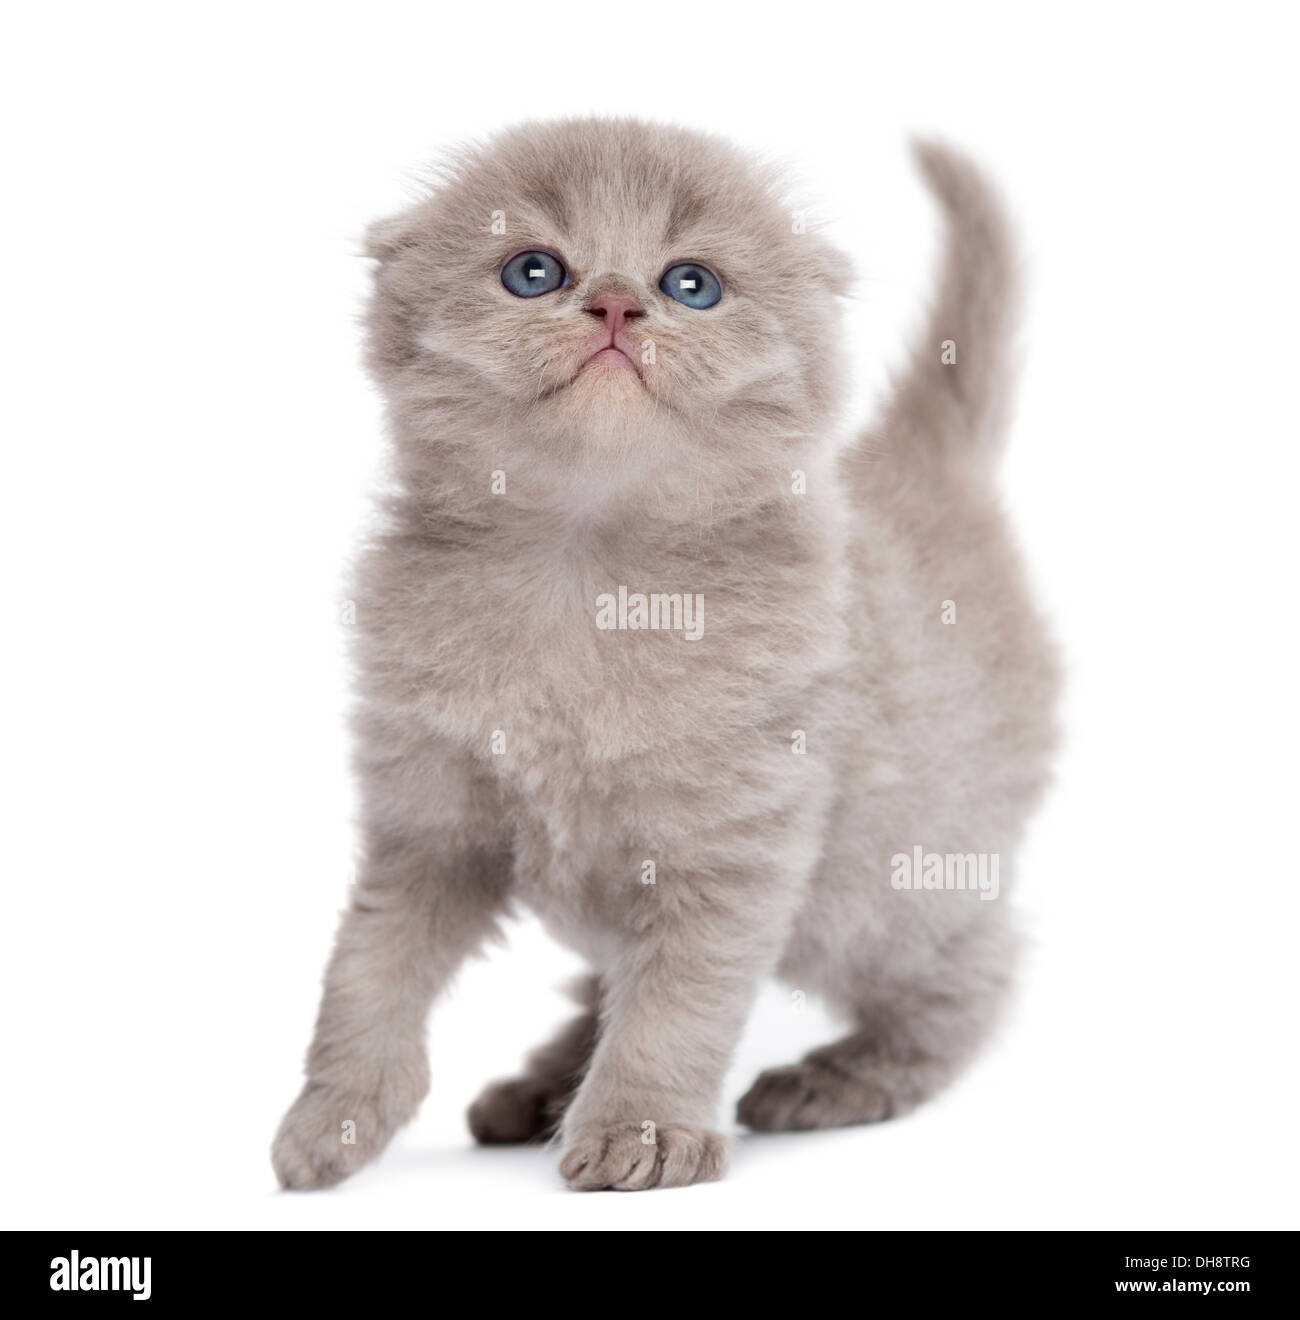 Highland fold kitten against white background Stock Photo